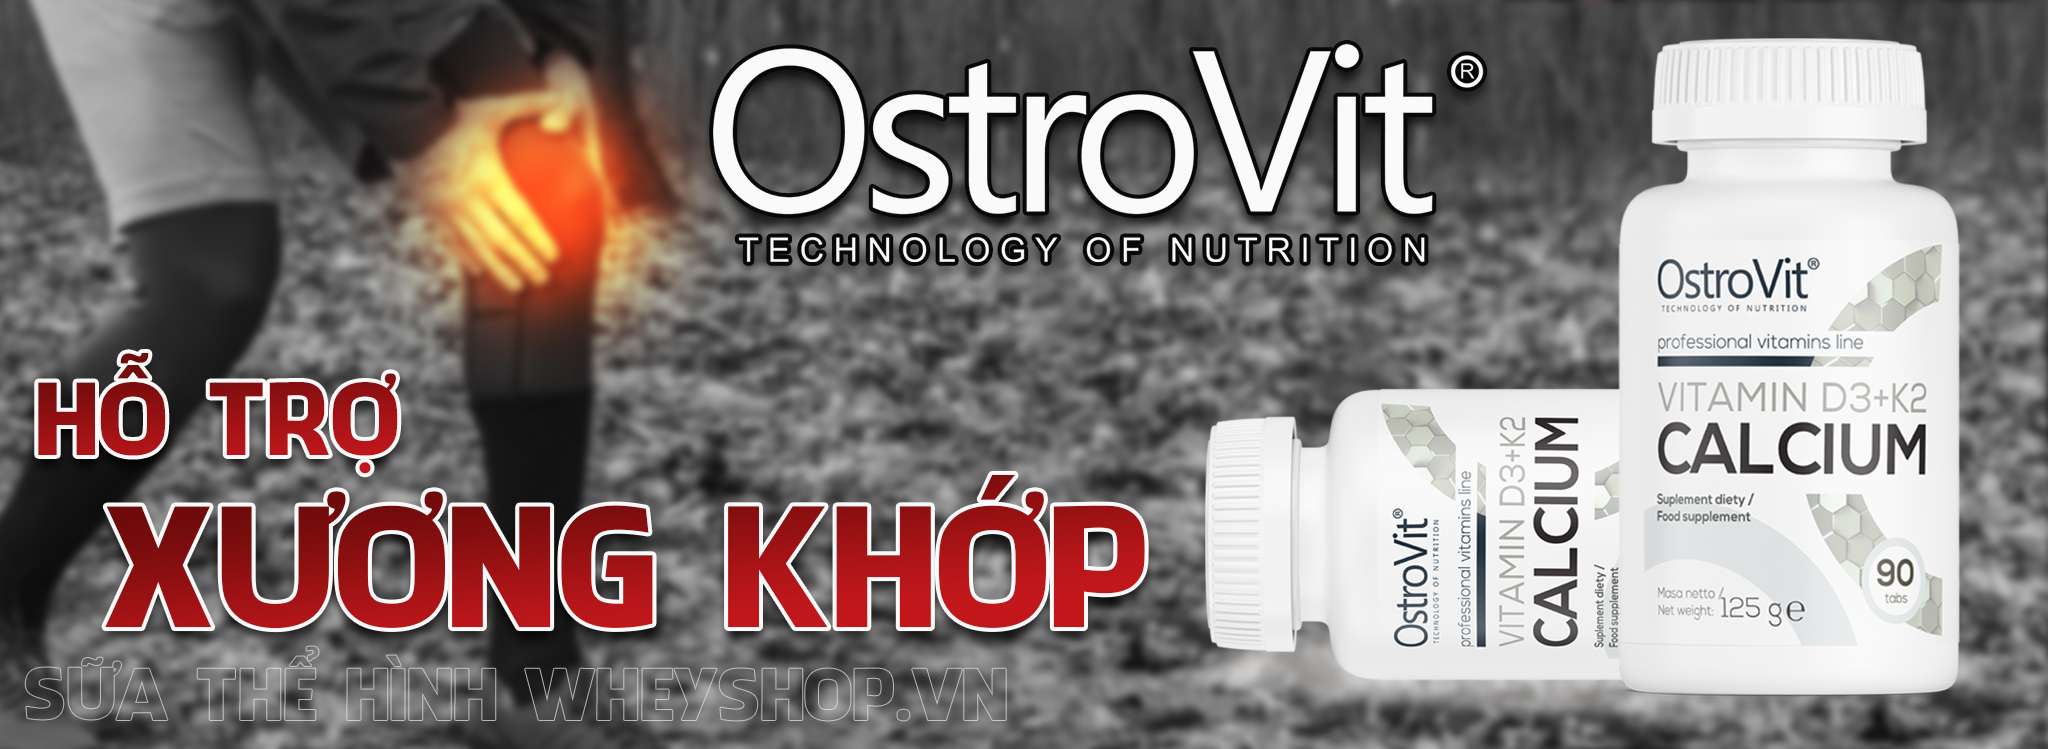 Ostrovit Vitamin D3 K2 Calcium là công thức kết hợp “3 in 1” hỗ trợ xương khớp chắc khỏe. Ostrovit Vitamin D3 K2 Calcium nhập khẩu chính hãng, giá rẻ tại Hà Nội TpHCM